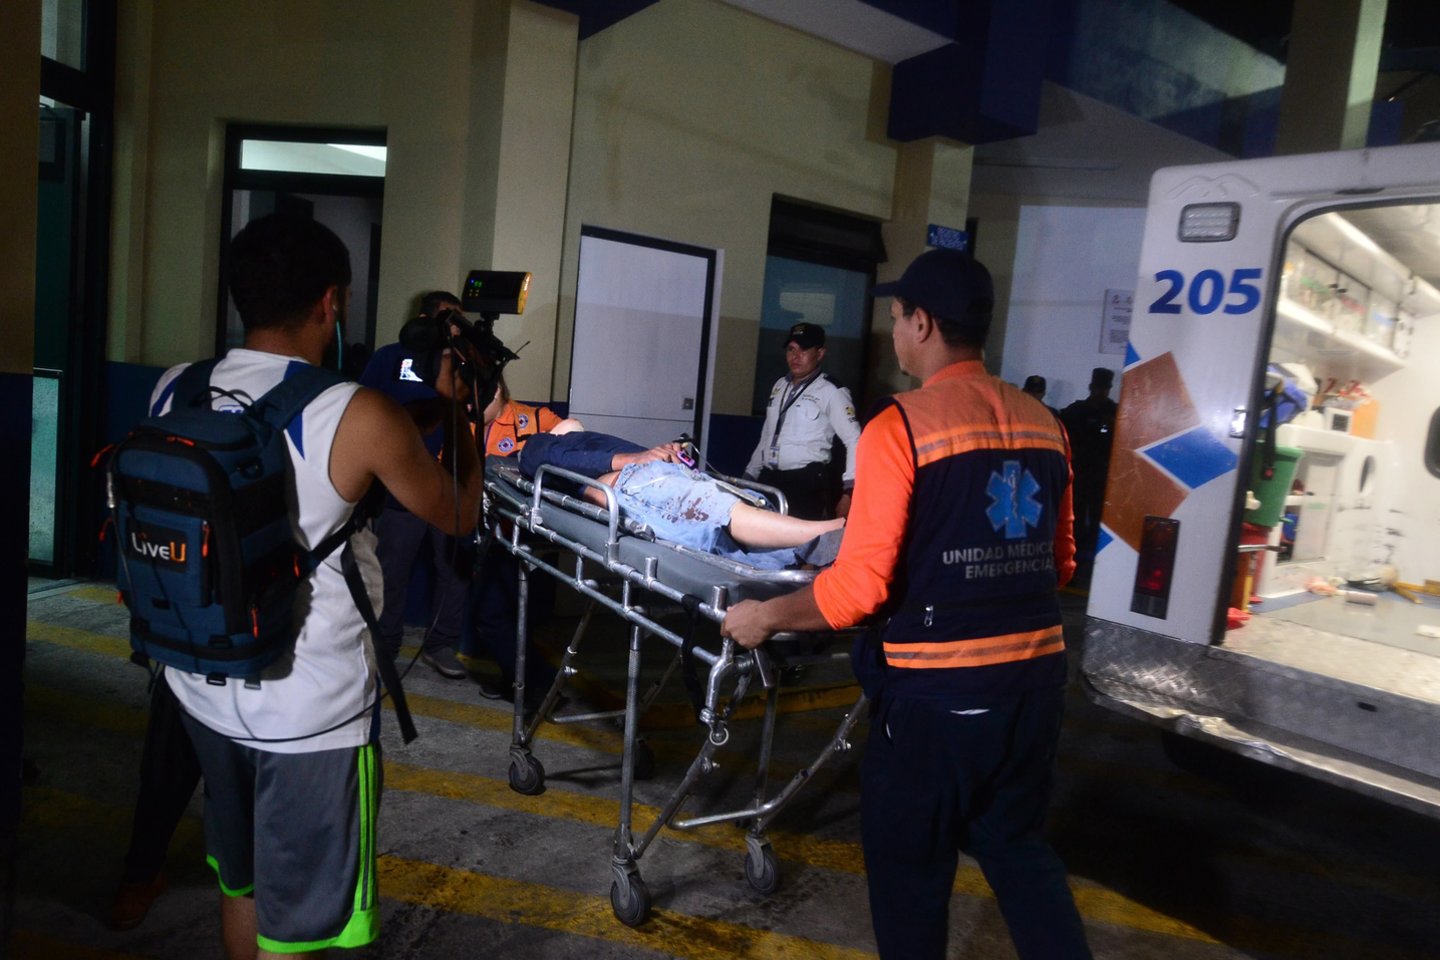  Hondūre per futbolo aistruolių muštynės žuvo mažiausiai trys asmenys.<br> AFP/Scanpix nuotr.